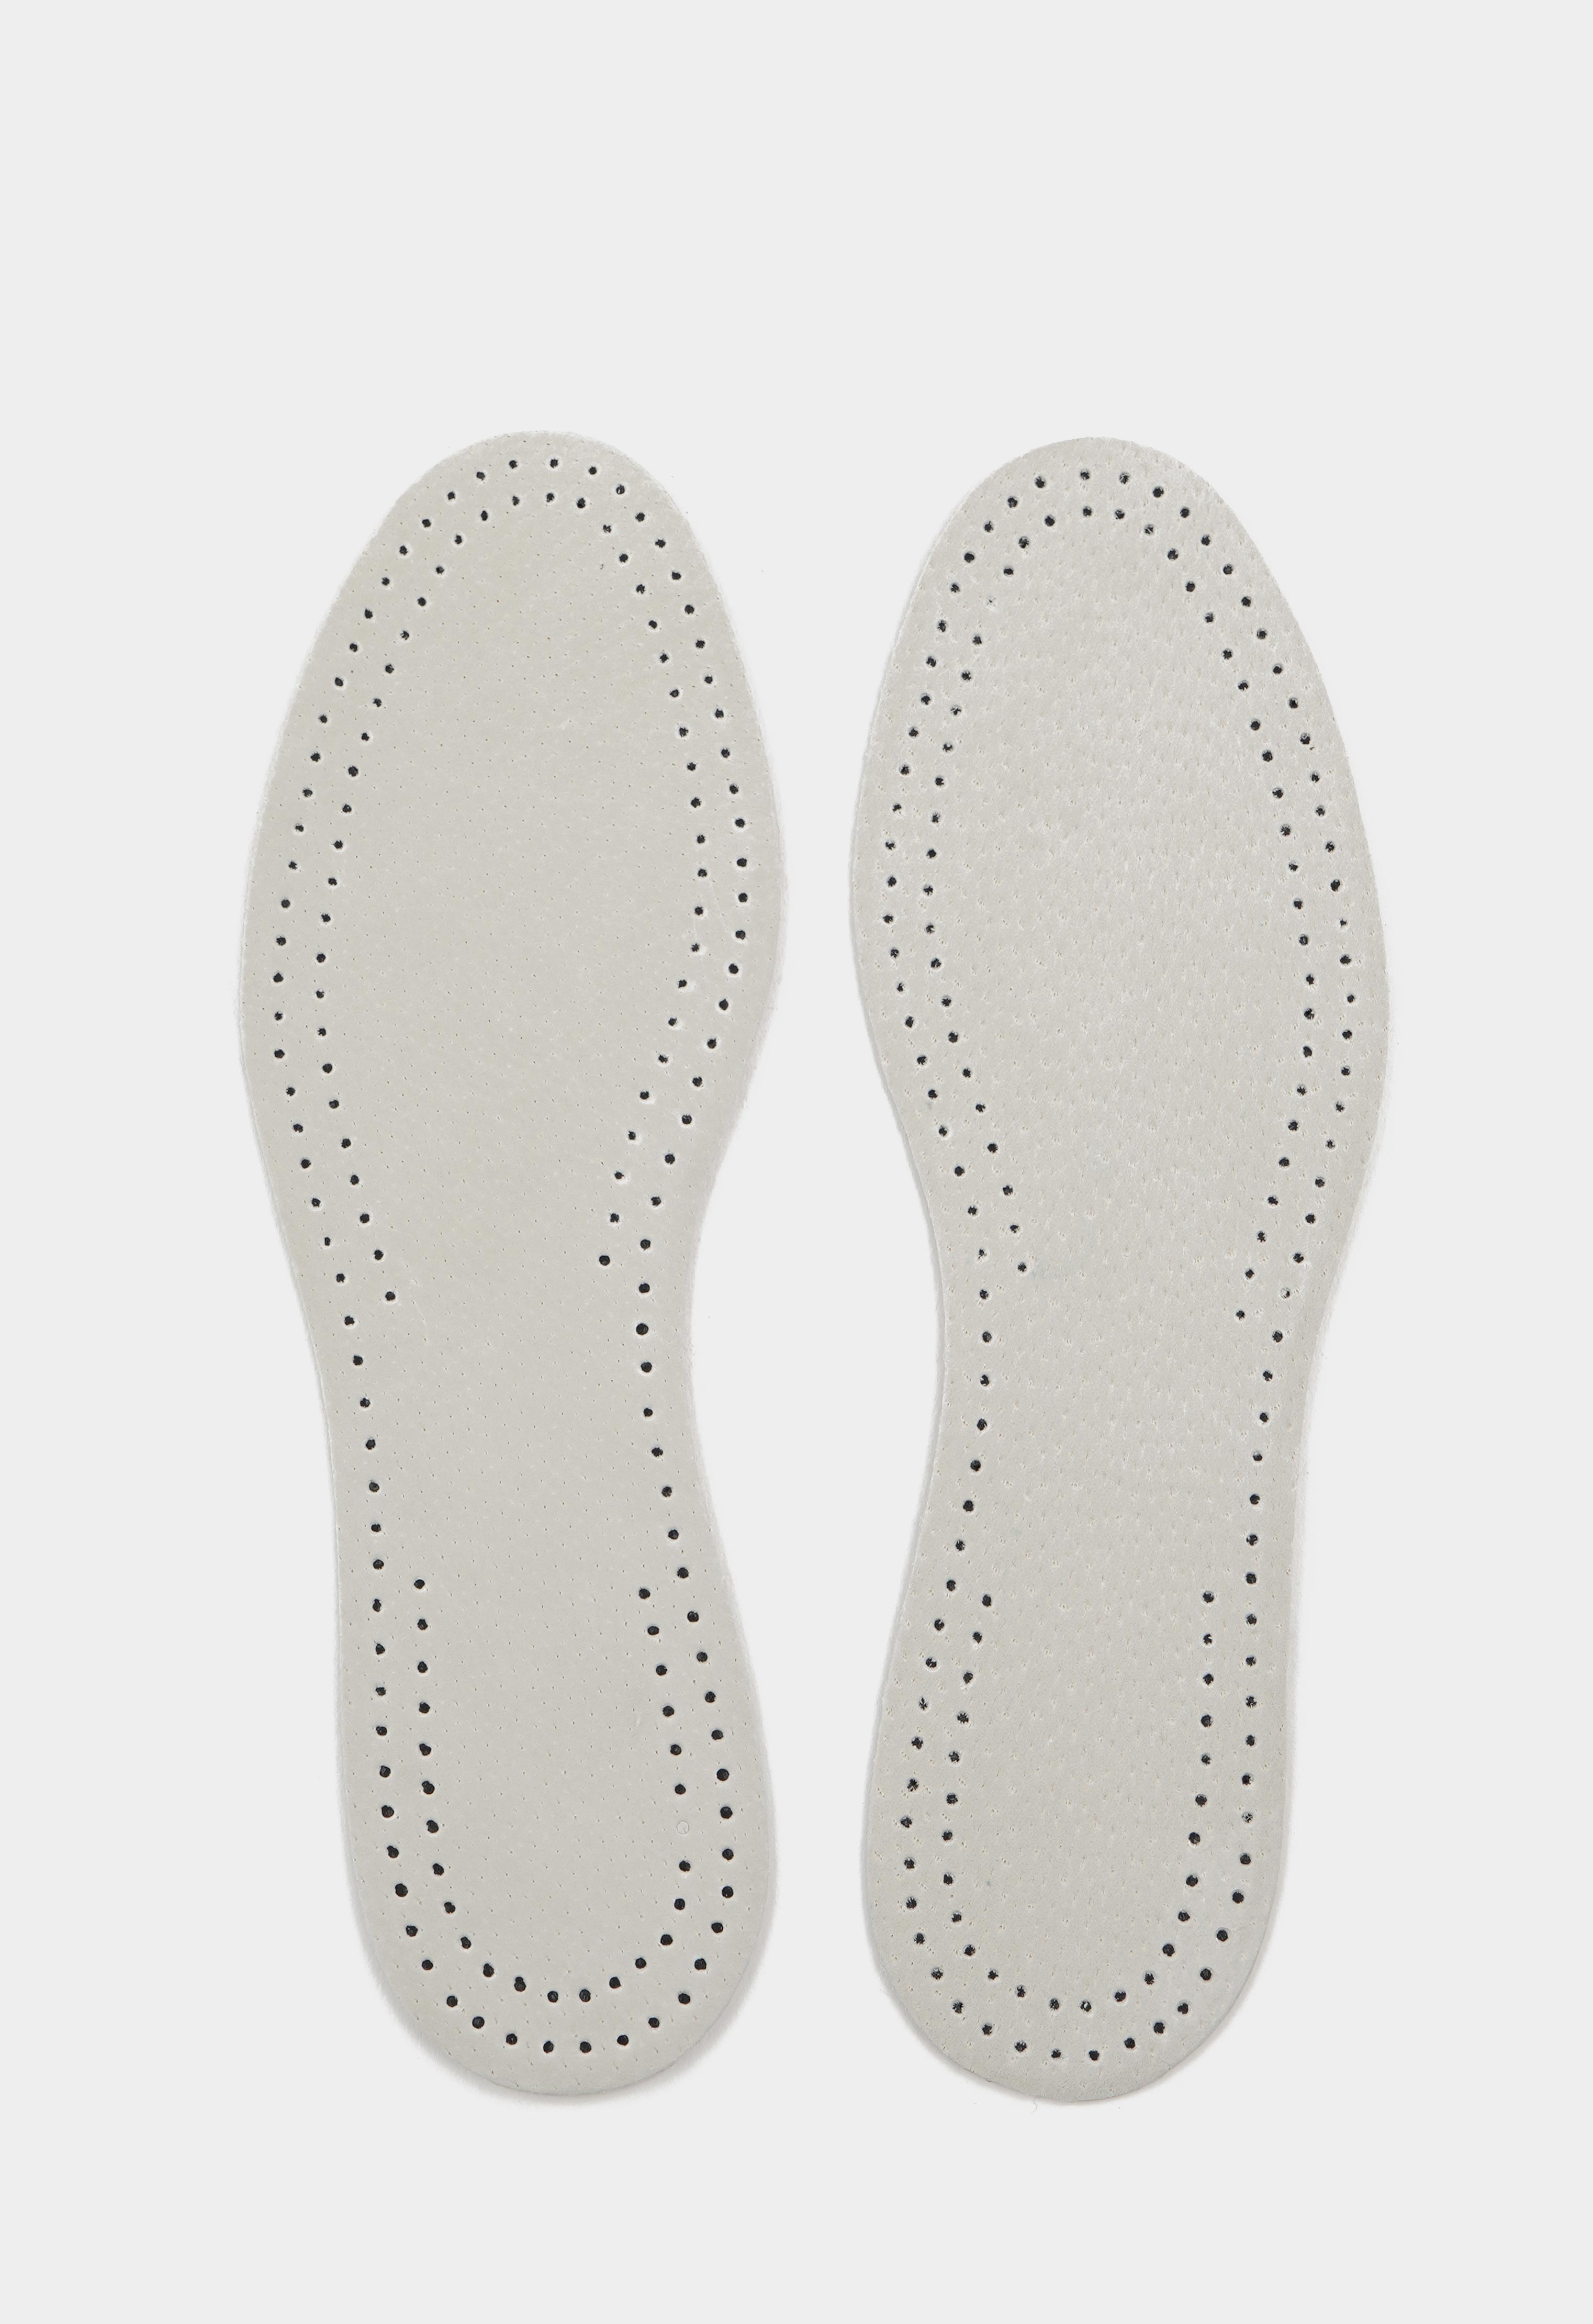 Уход за обувью 20-8955 TARRAGO - Стельки PECARI CARBON, натуральная кожа/латекс, р.35/36 стельки для обуви tarrago leather carbon р 37 38